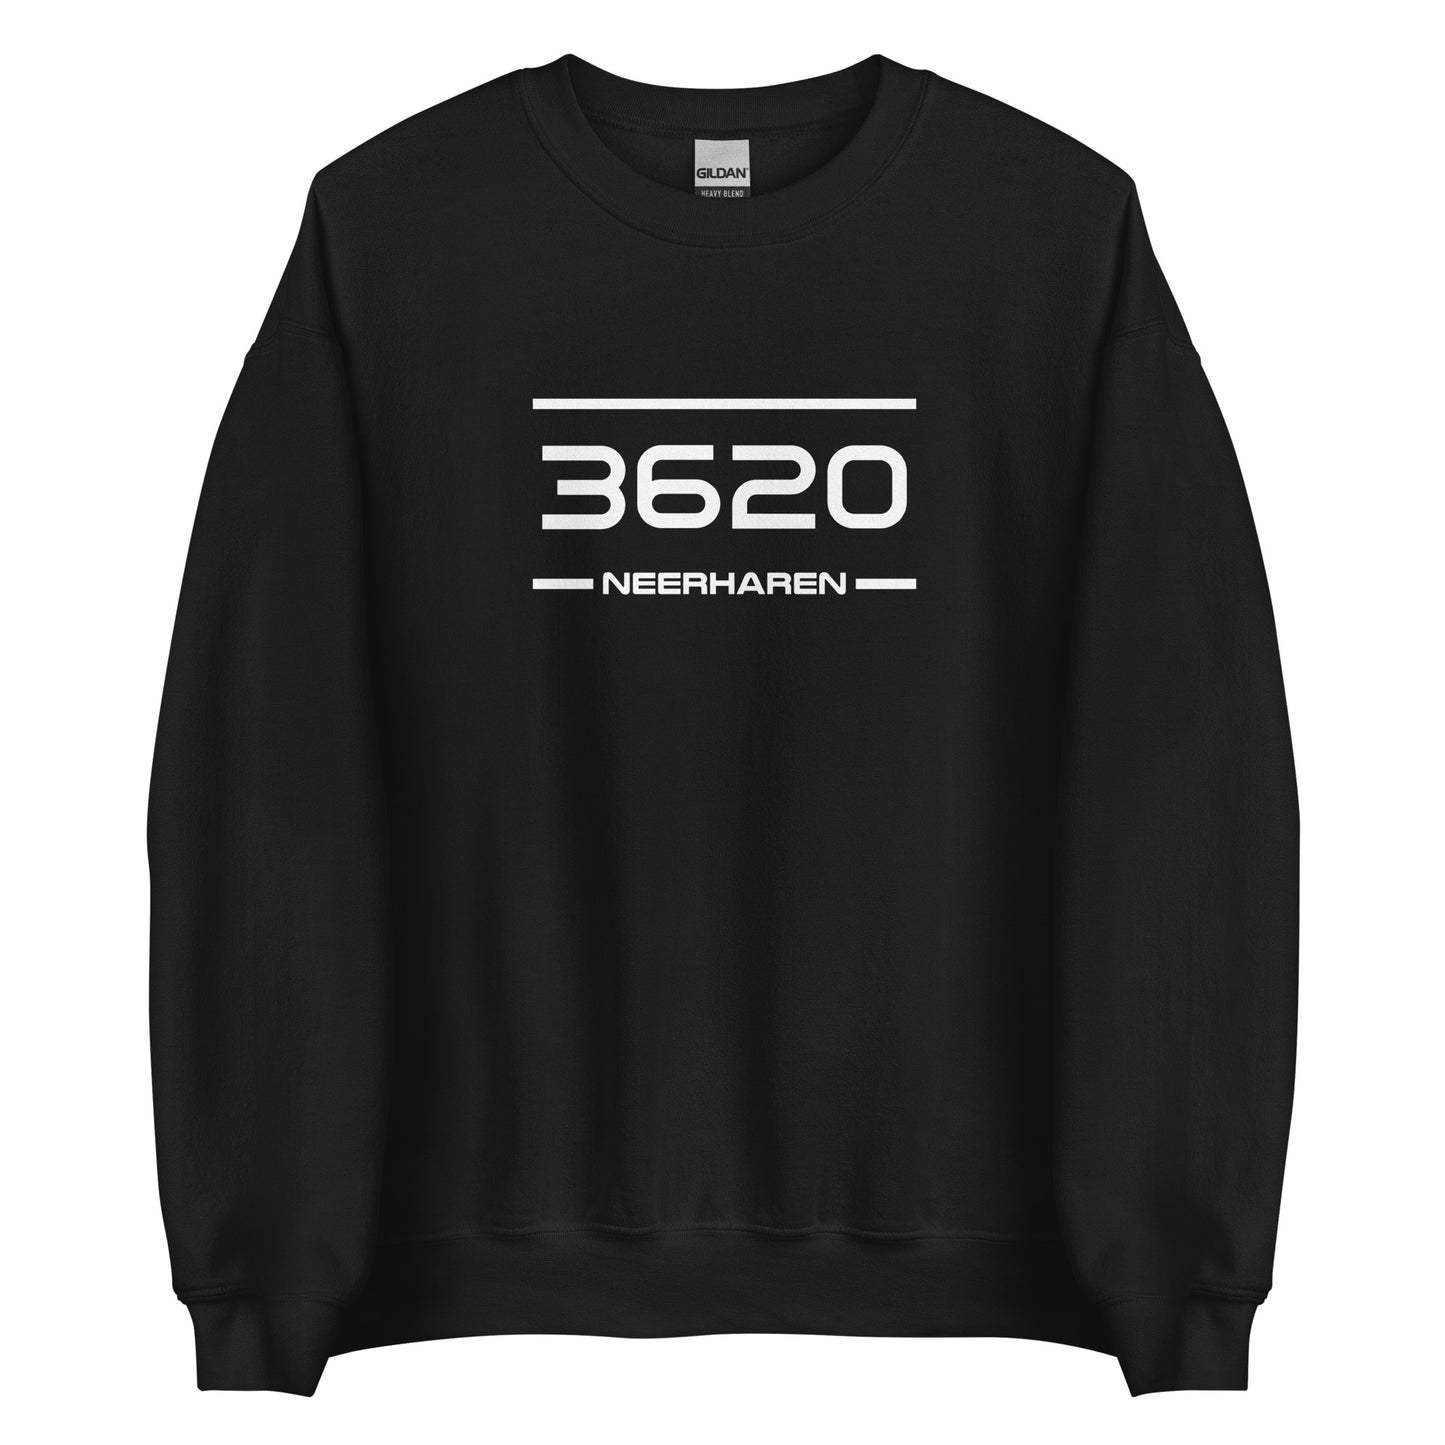 Sweater - 3620 - Neerharen (M/V)